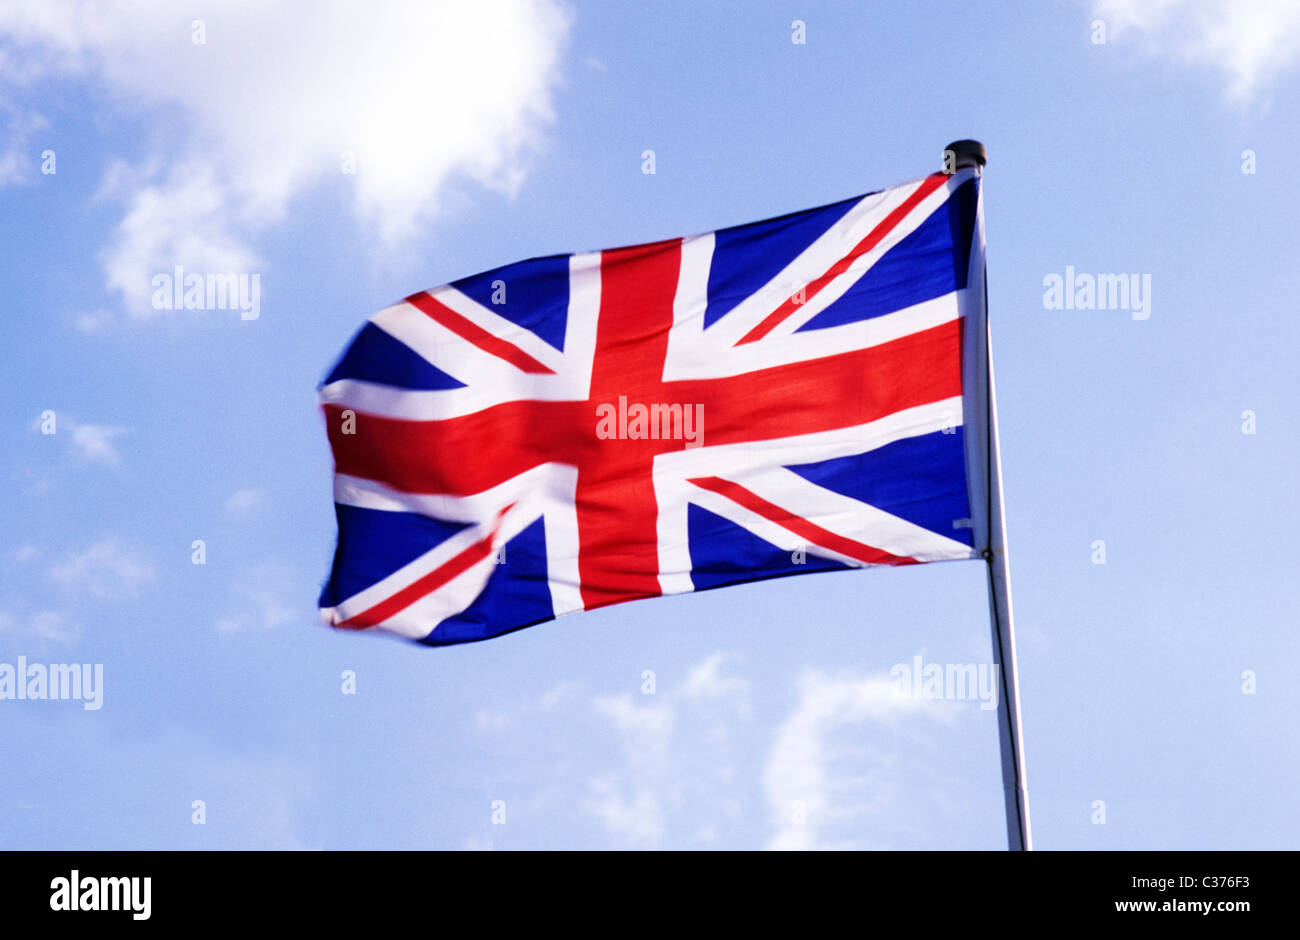 Union Jack Flag British national flags flagpole pole poles UK flying in wind flagstaff England UK English Red white and blue Stock Photo